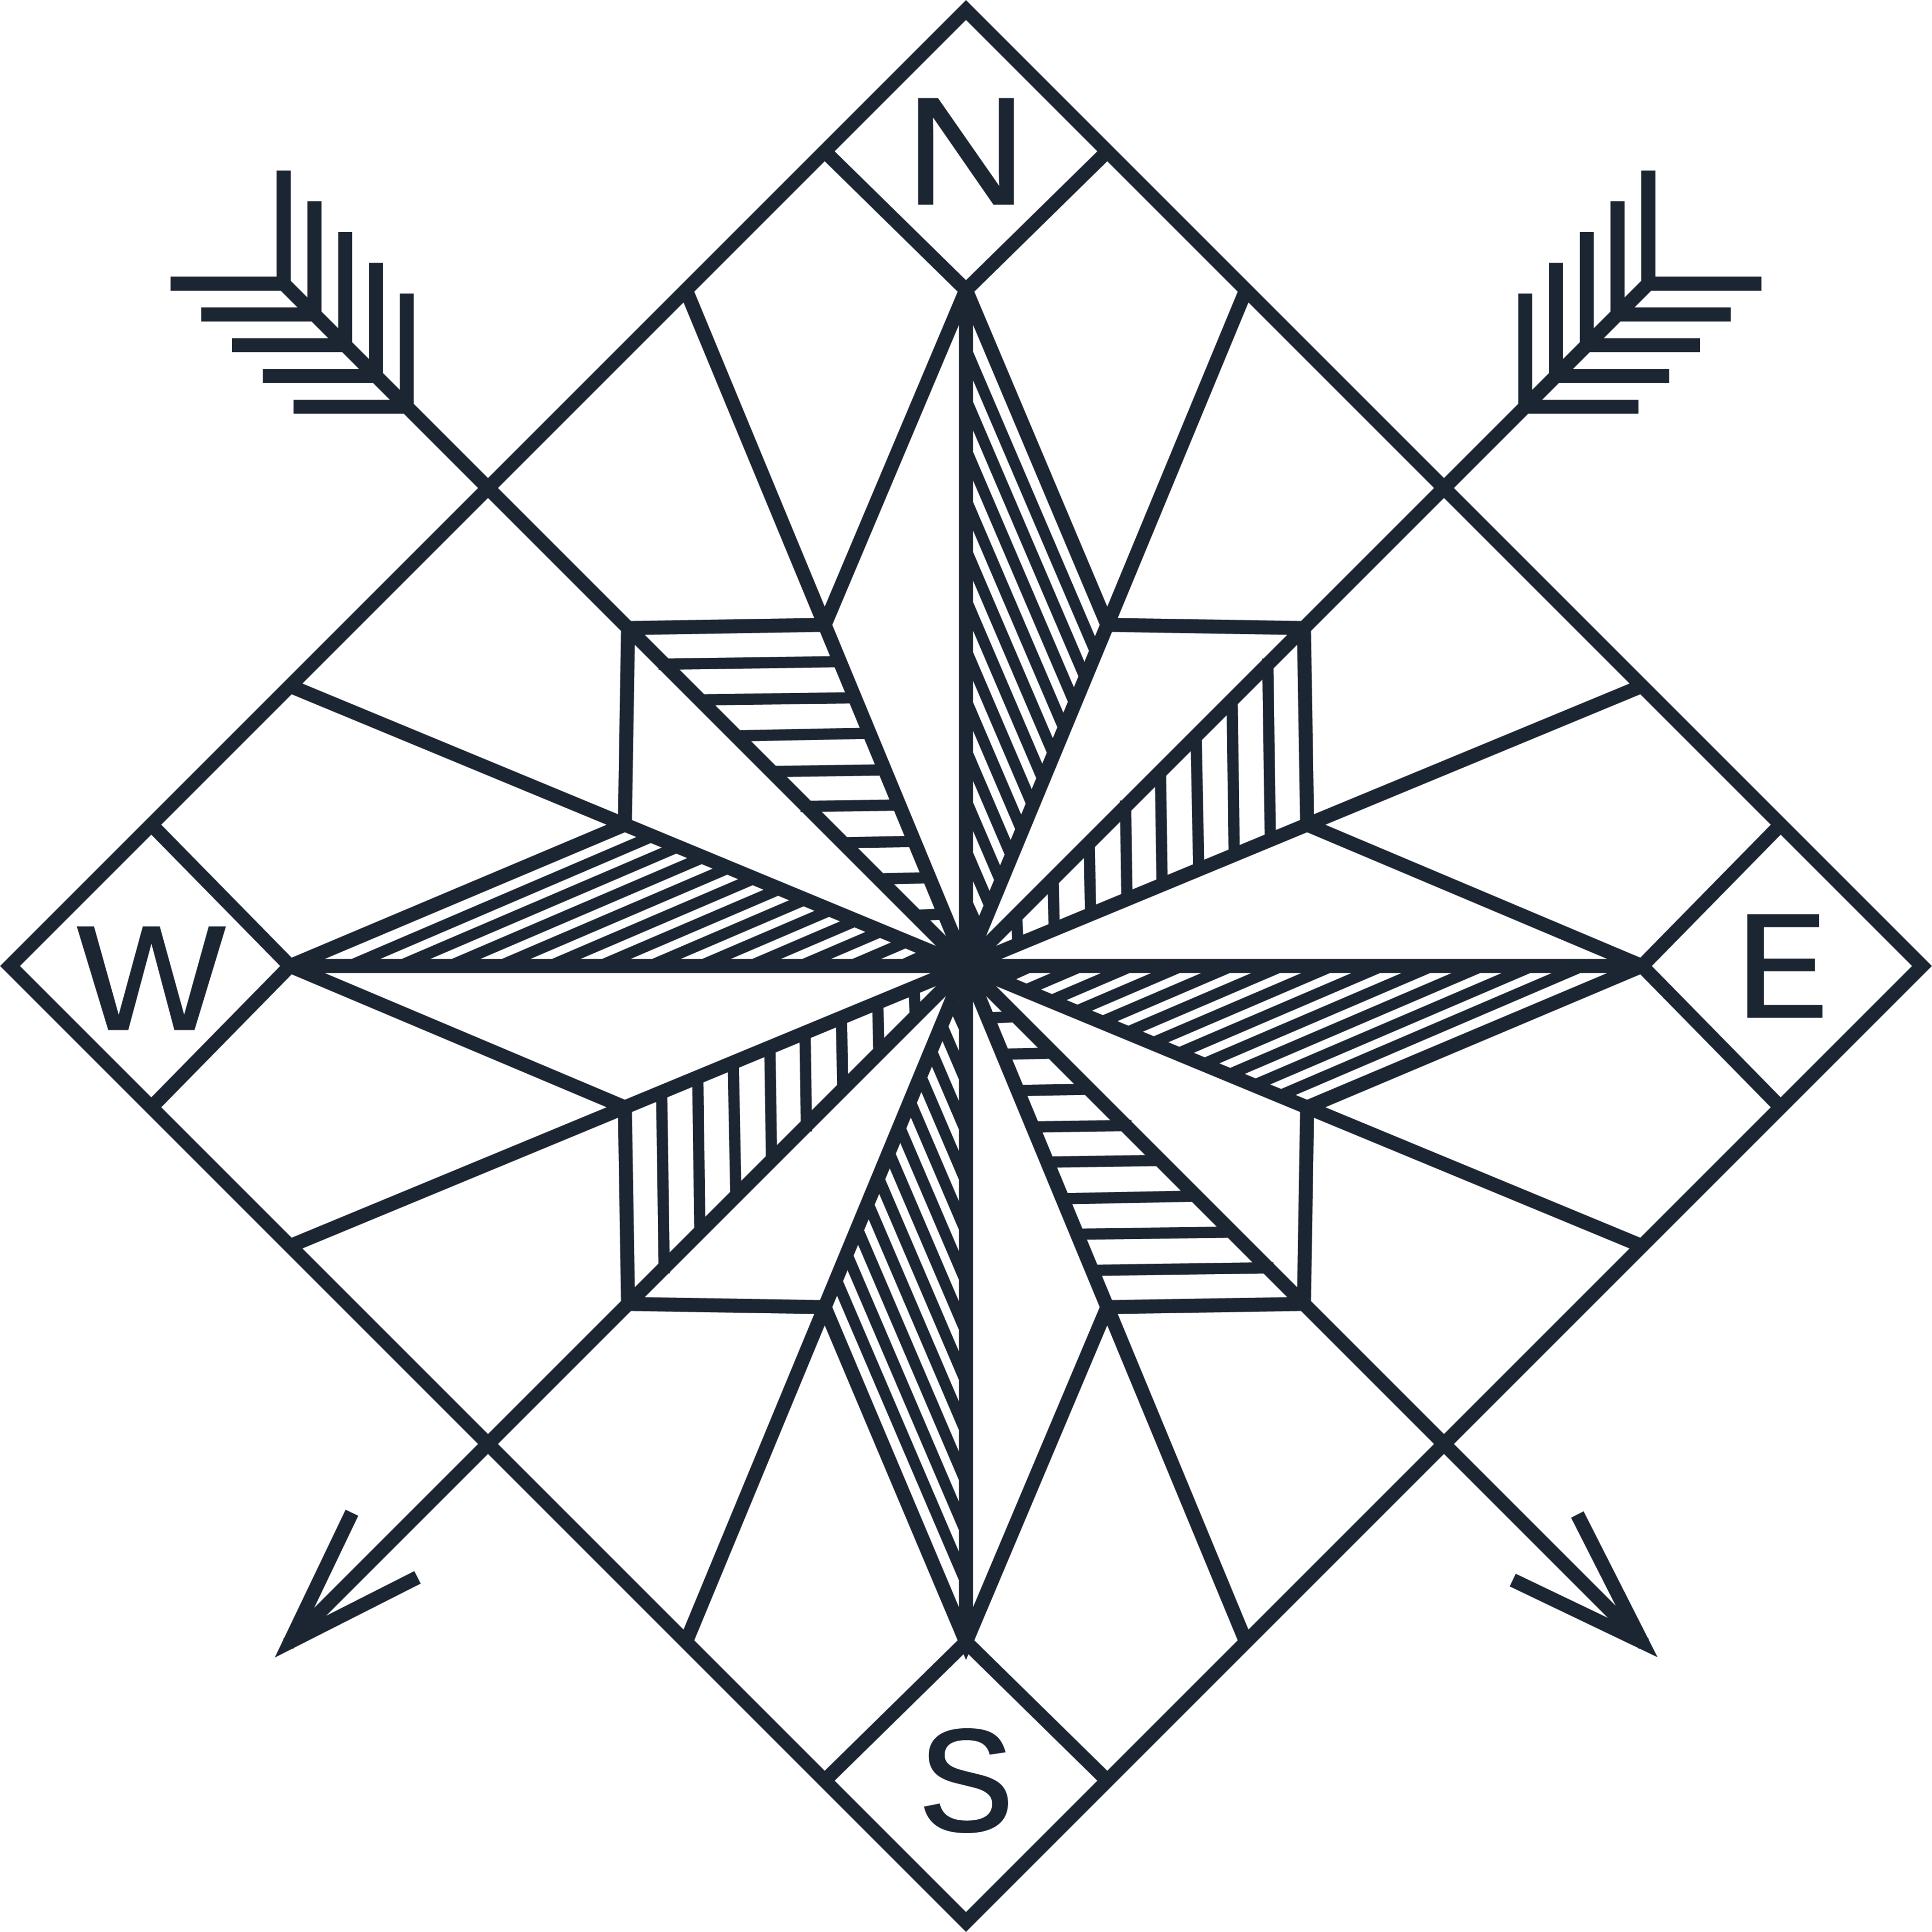 Nautical Ship & Compass tattoo design I made : r/TattooDesigns